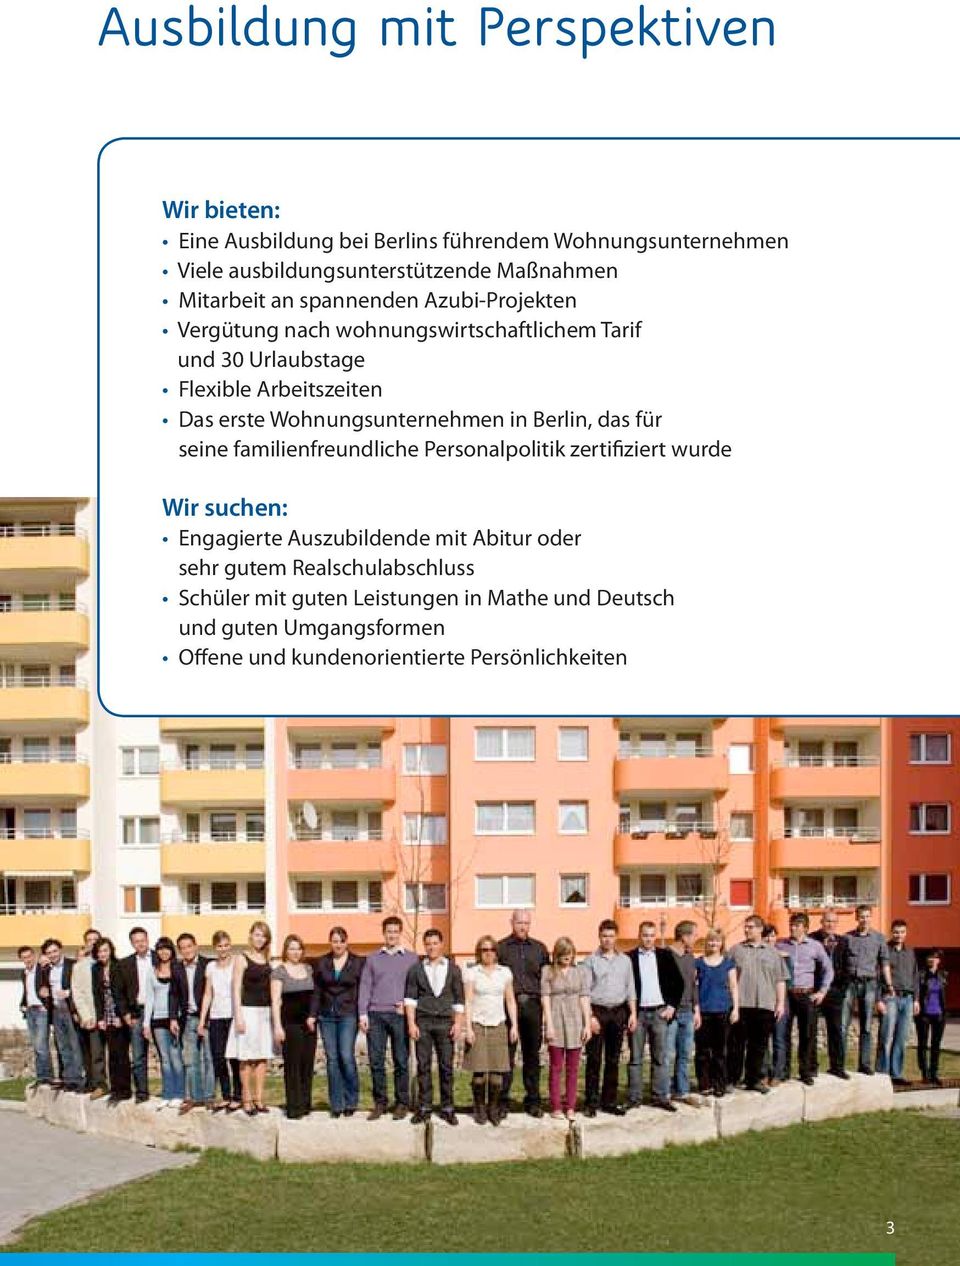 Wohnungsunternehmen in Berlin, das für seine familienfreundliche Personalpolitik zertifiziert wurde Wir suchen: Engagierte Auszubildende mit